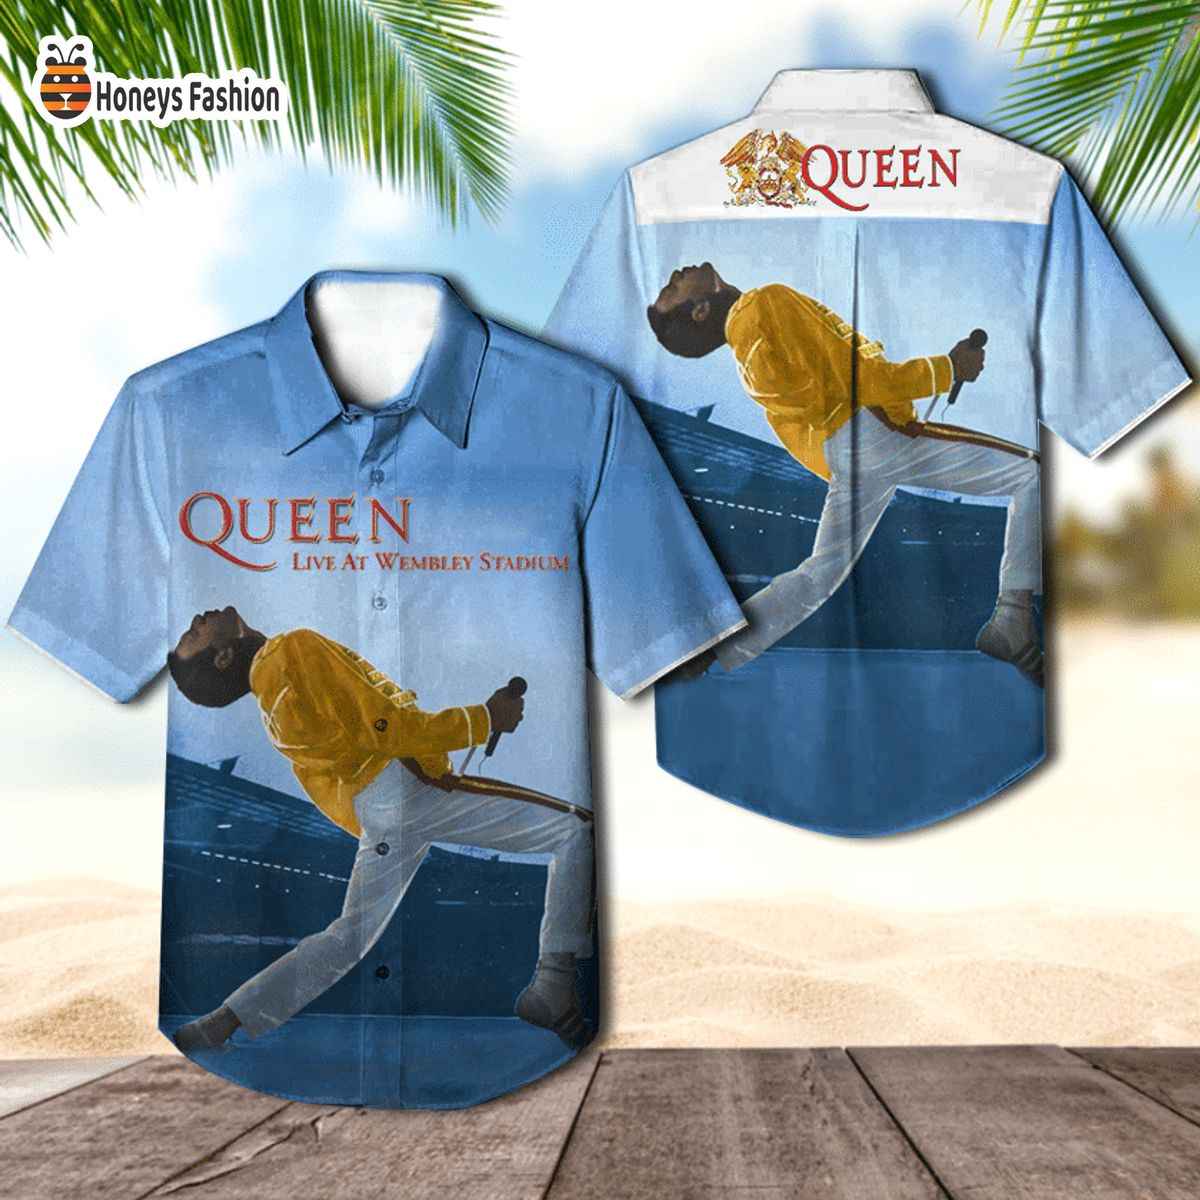 Queen band live at wembley stadium album cover hawaiian shirt